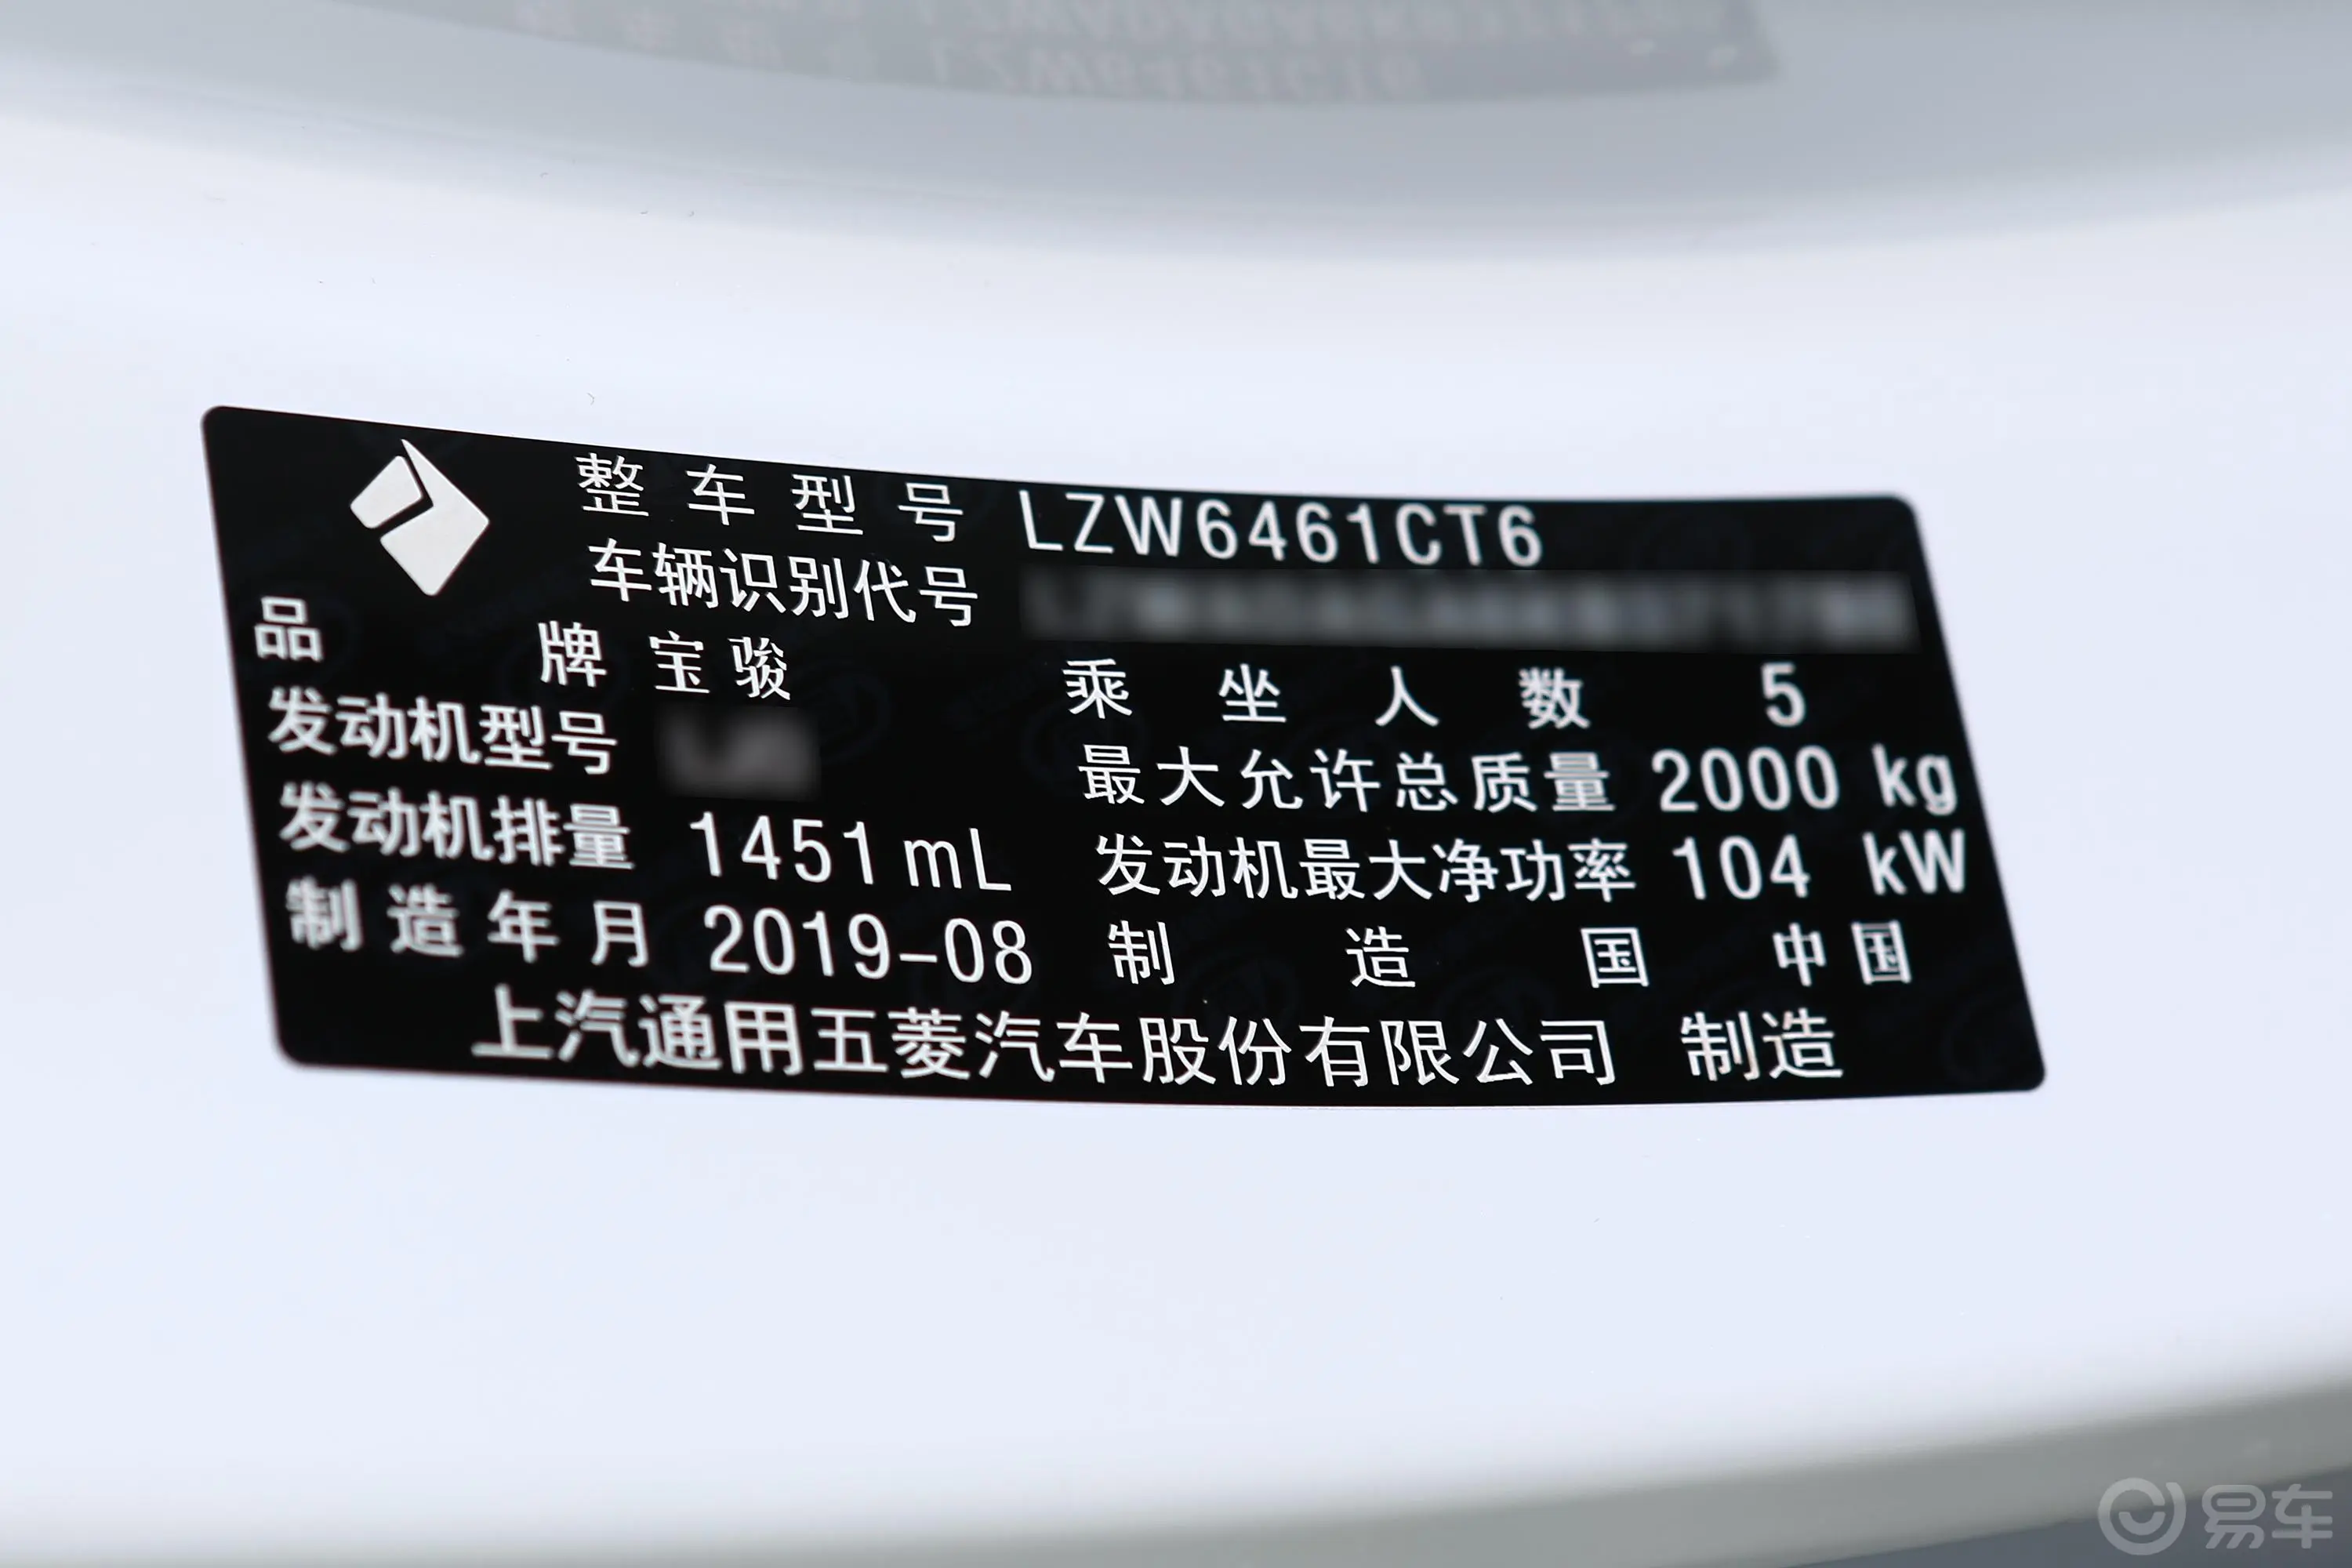 宝骏RS-51.5T 手动 超级互联手动版 国VI车辆信息铭牌